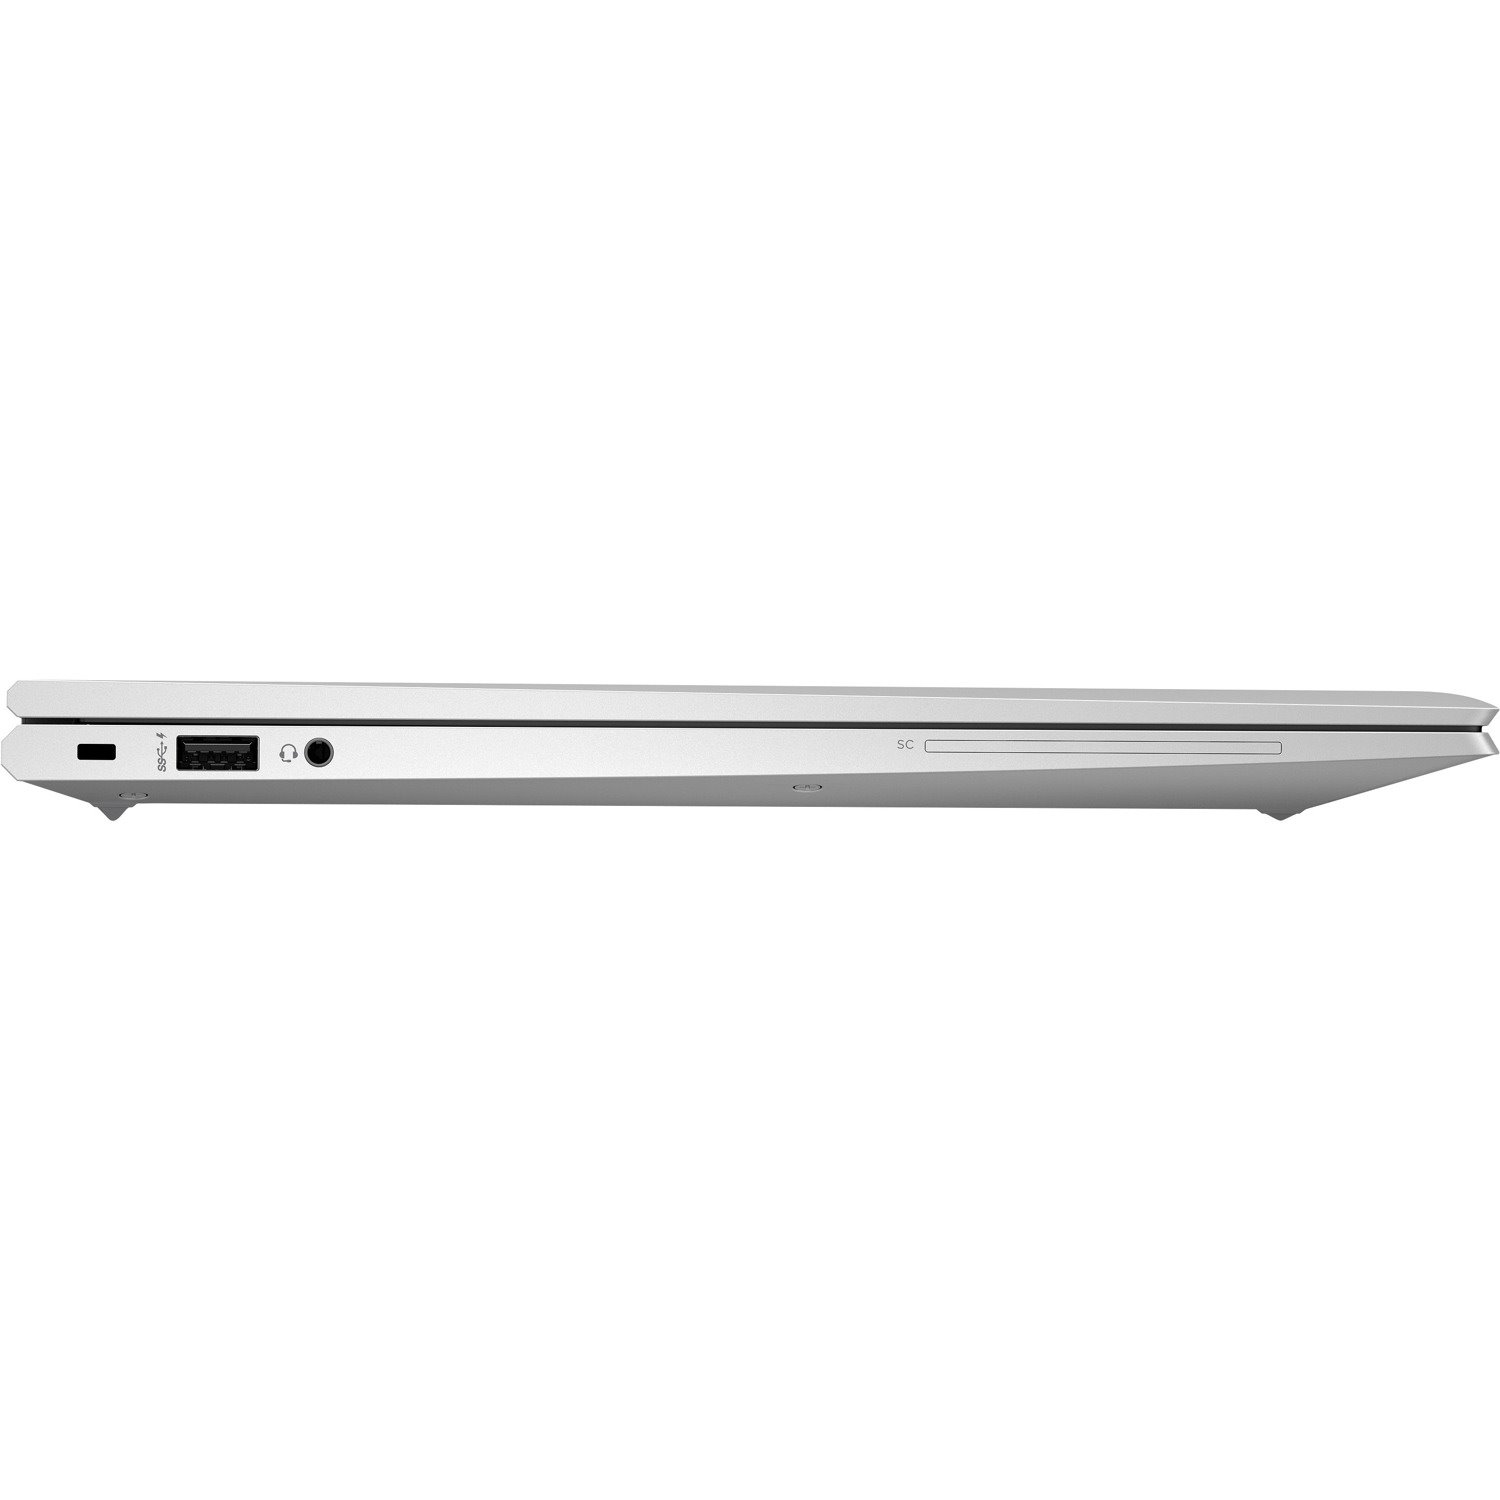 HP EliteBook 850 G7 15.6" Notebook - Intel Core i7 10th Gen i7-10510U Quad-core (4 Core) 1.80 GHz - 8 GB Total RAM - 256 GB SSD